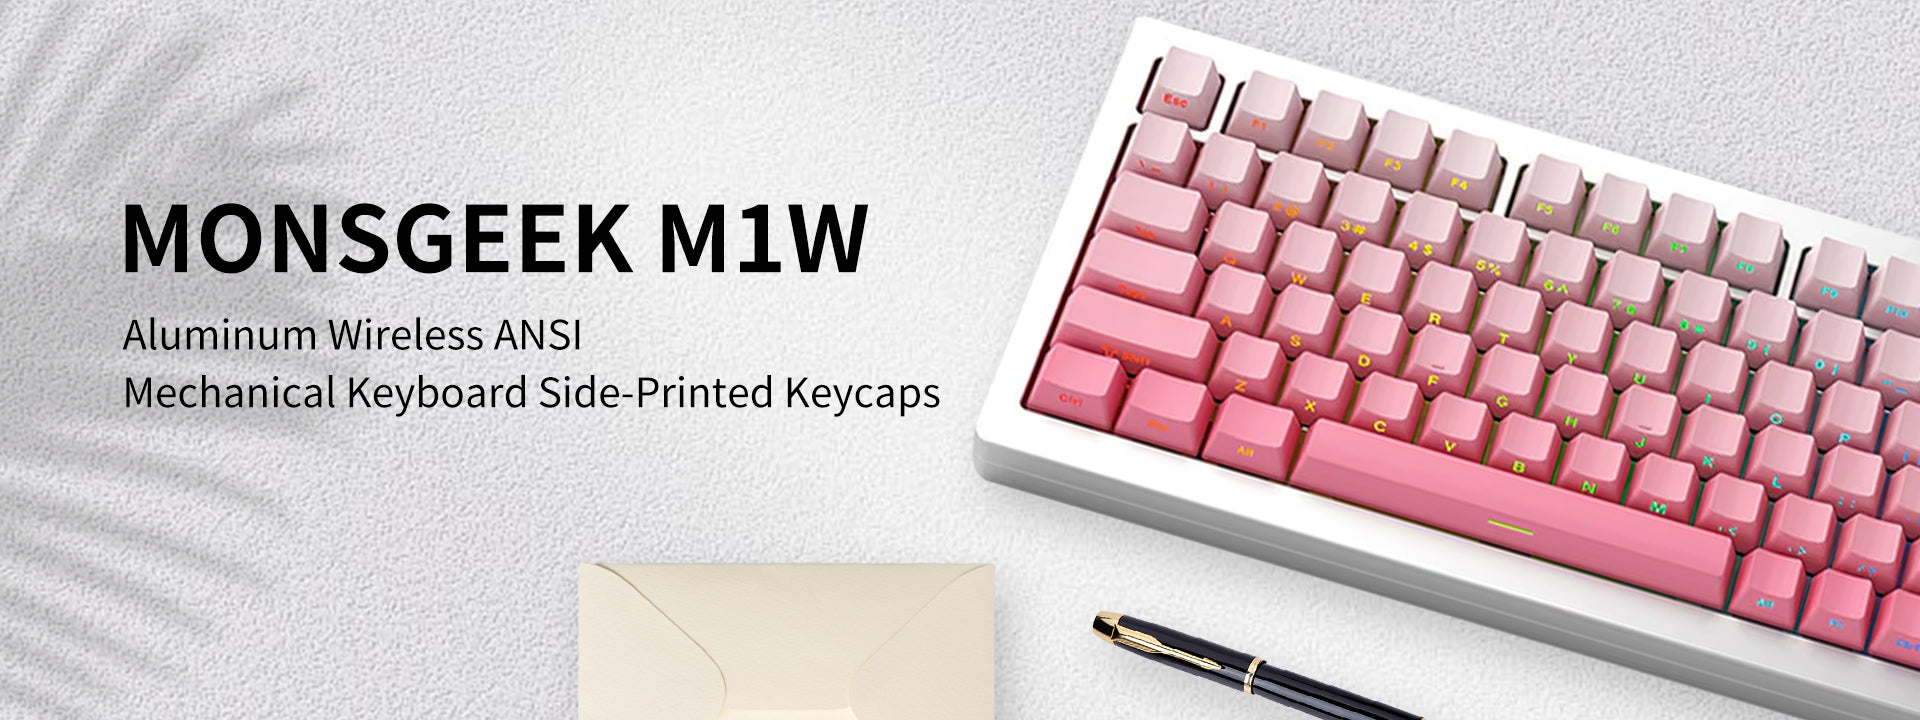 Monsgeek m1w Aluminium Wireless ANSI Mechanical Keyboard